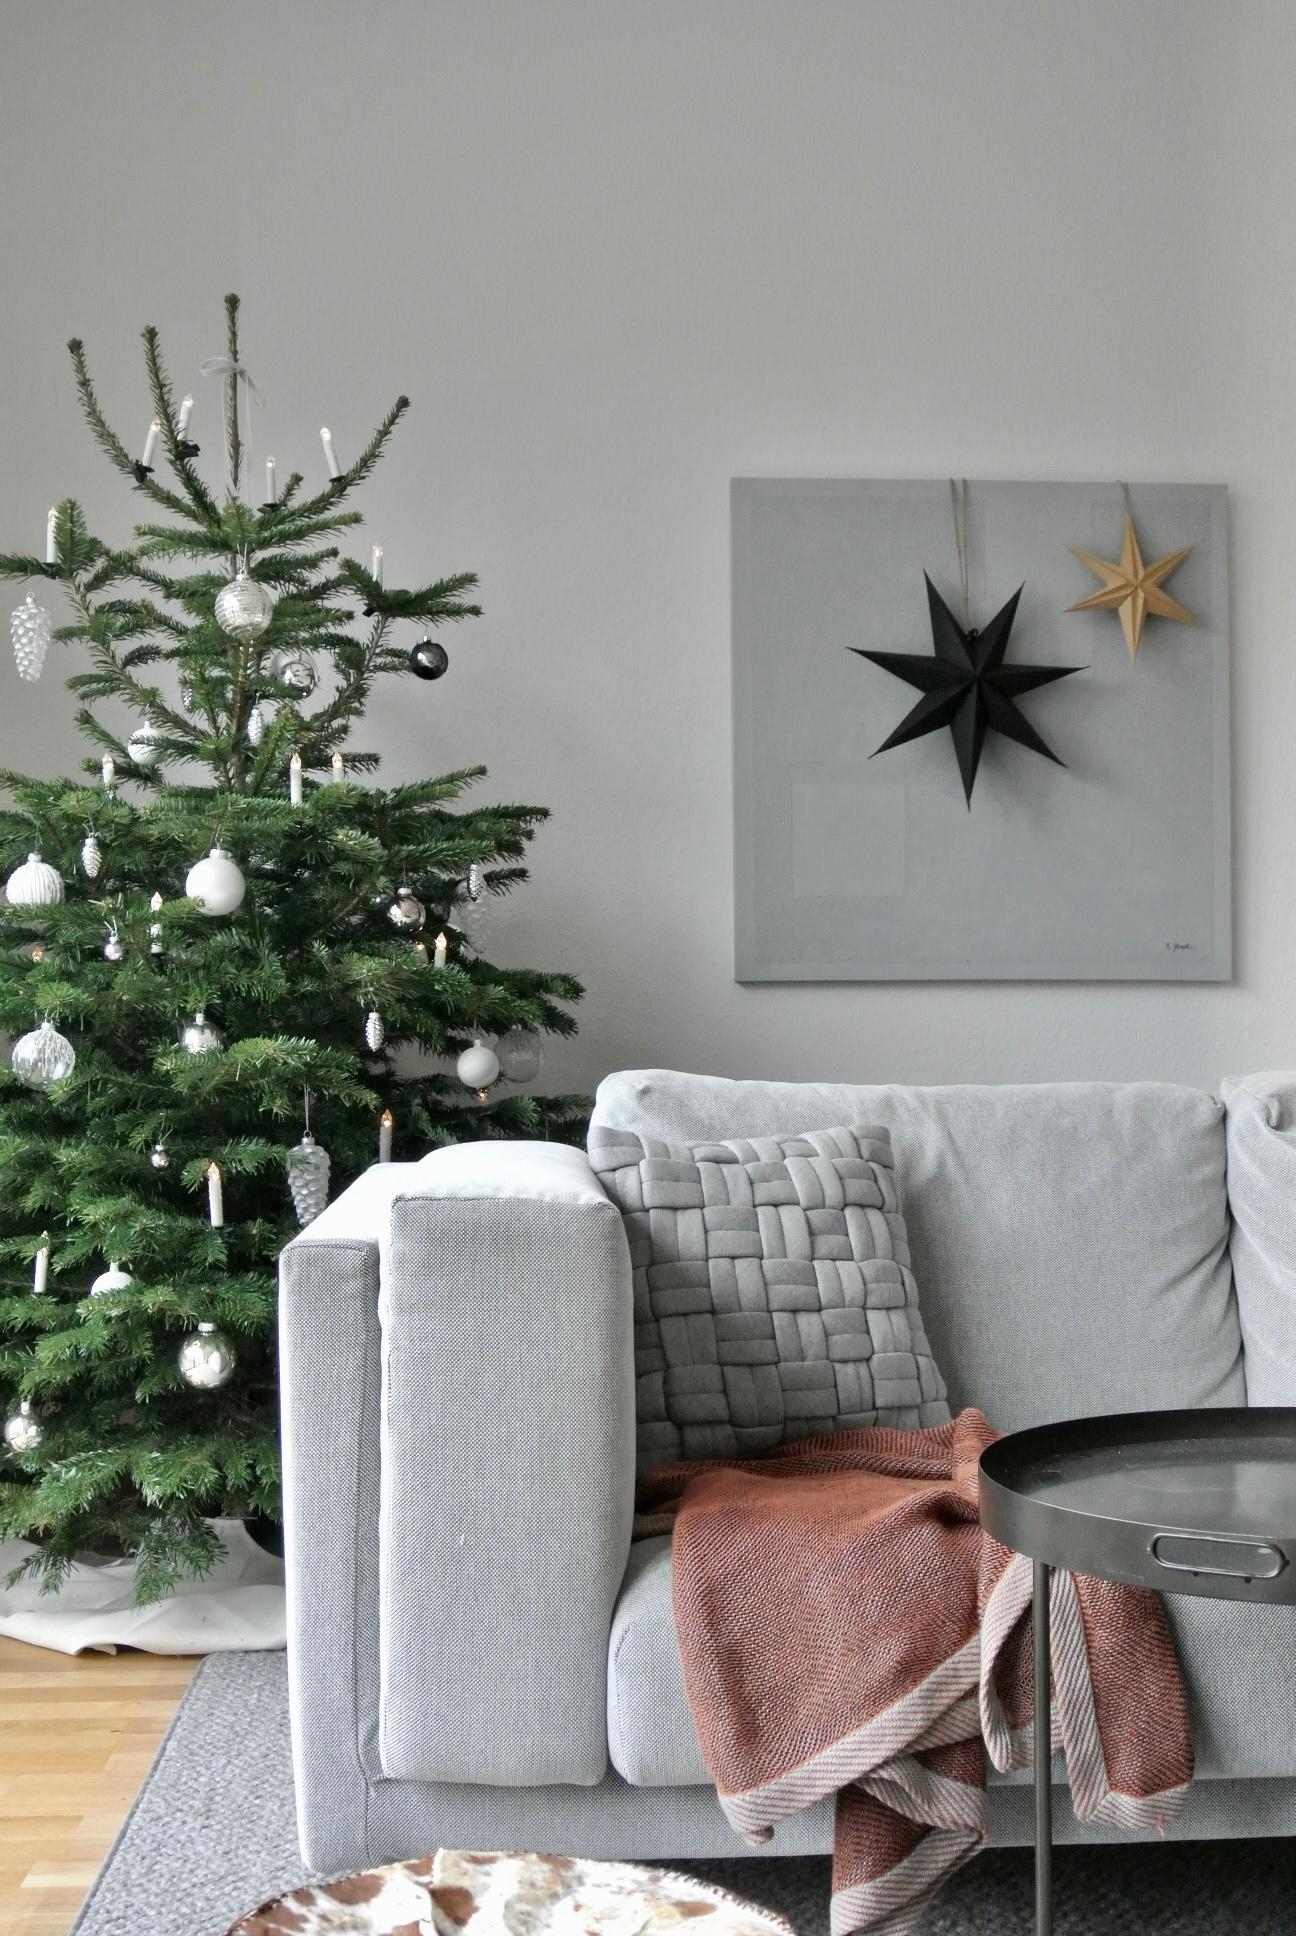 #weihnachtsbaum ist aufgestellt - jetzt kann es mit der #weihnachtsstimmung so richtig losgehen!
#weihnachten #adventszeit